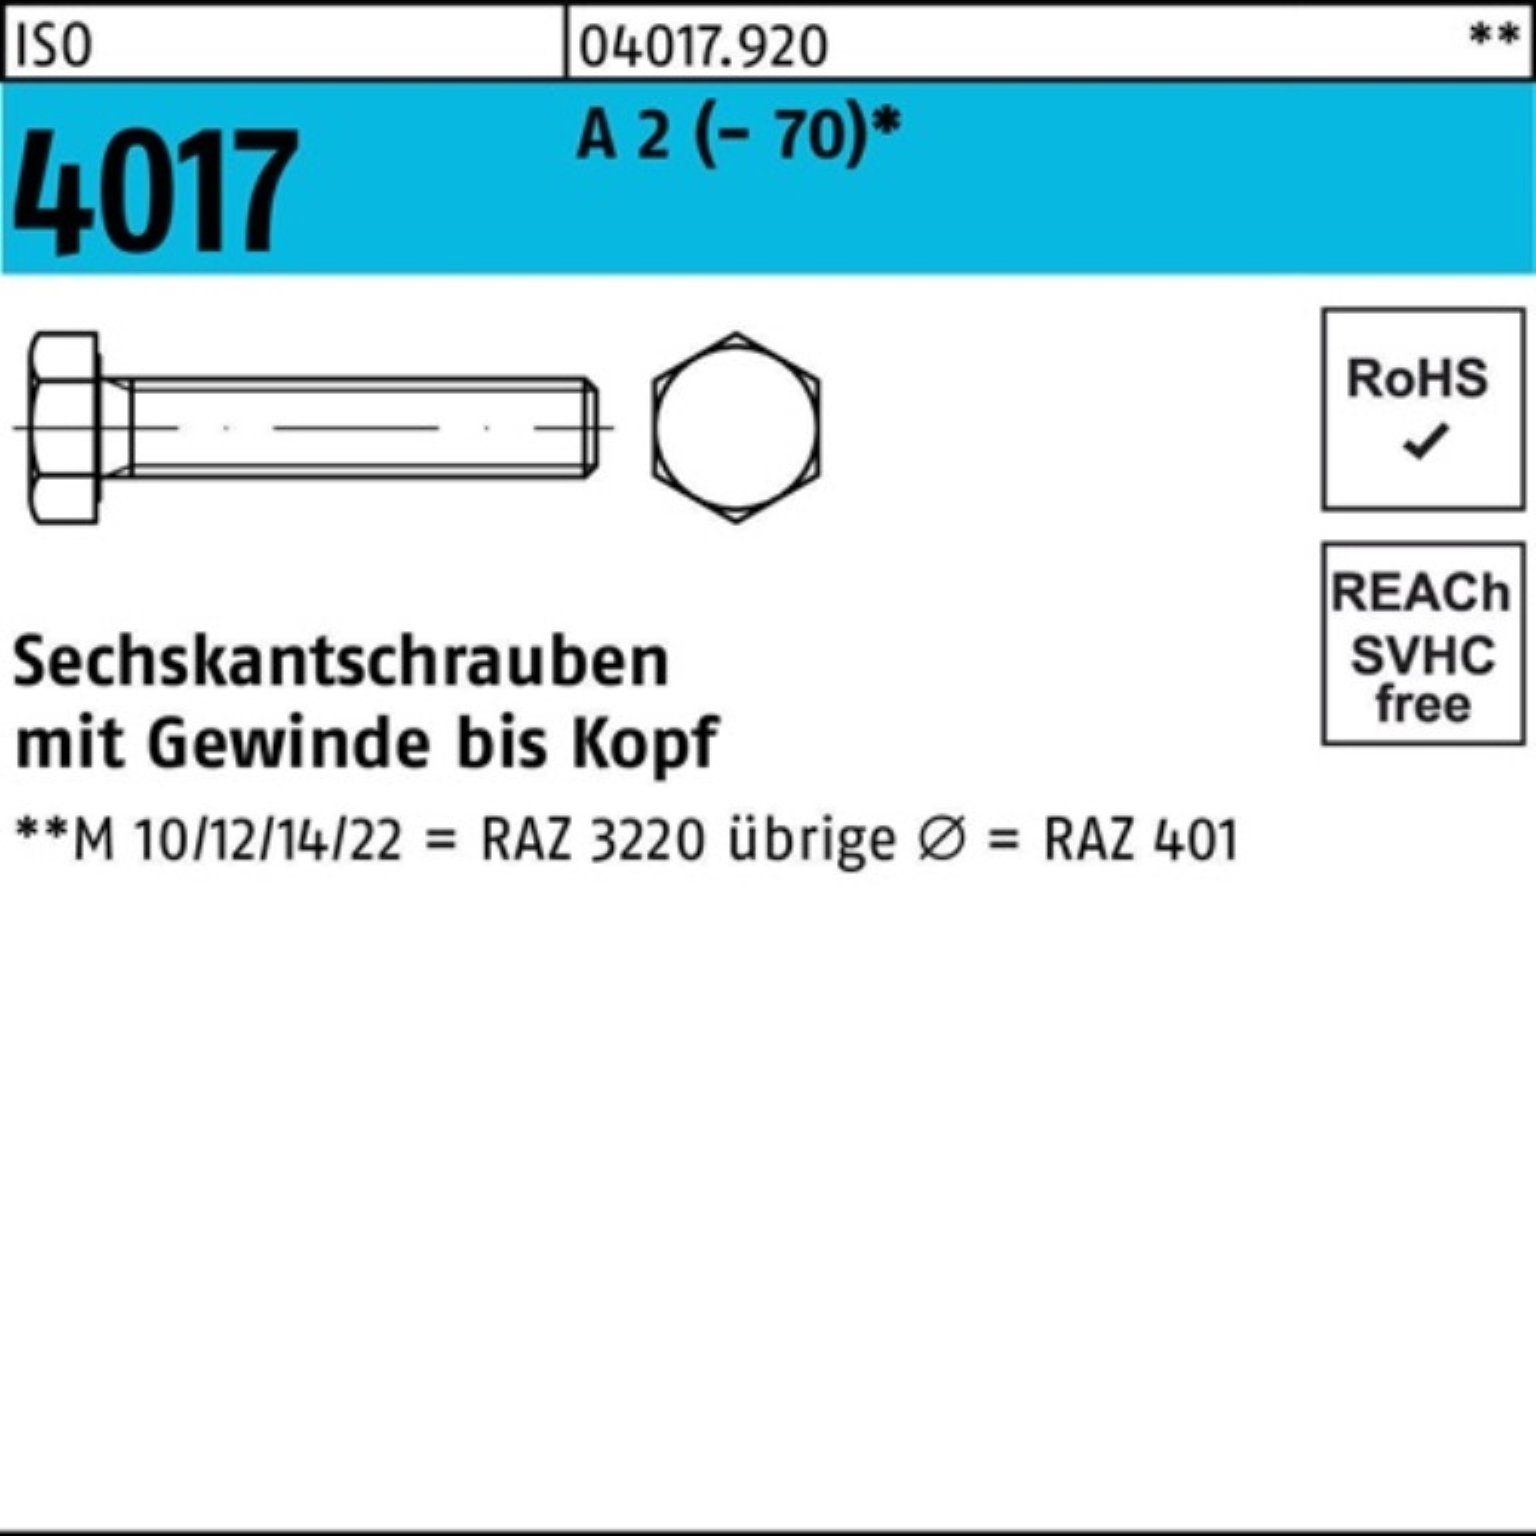 Bufab Sechskantschraube 200er Pack Sechskantschraube ISO 4017 VG M5x 60 A 2 (70) 200 Stück